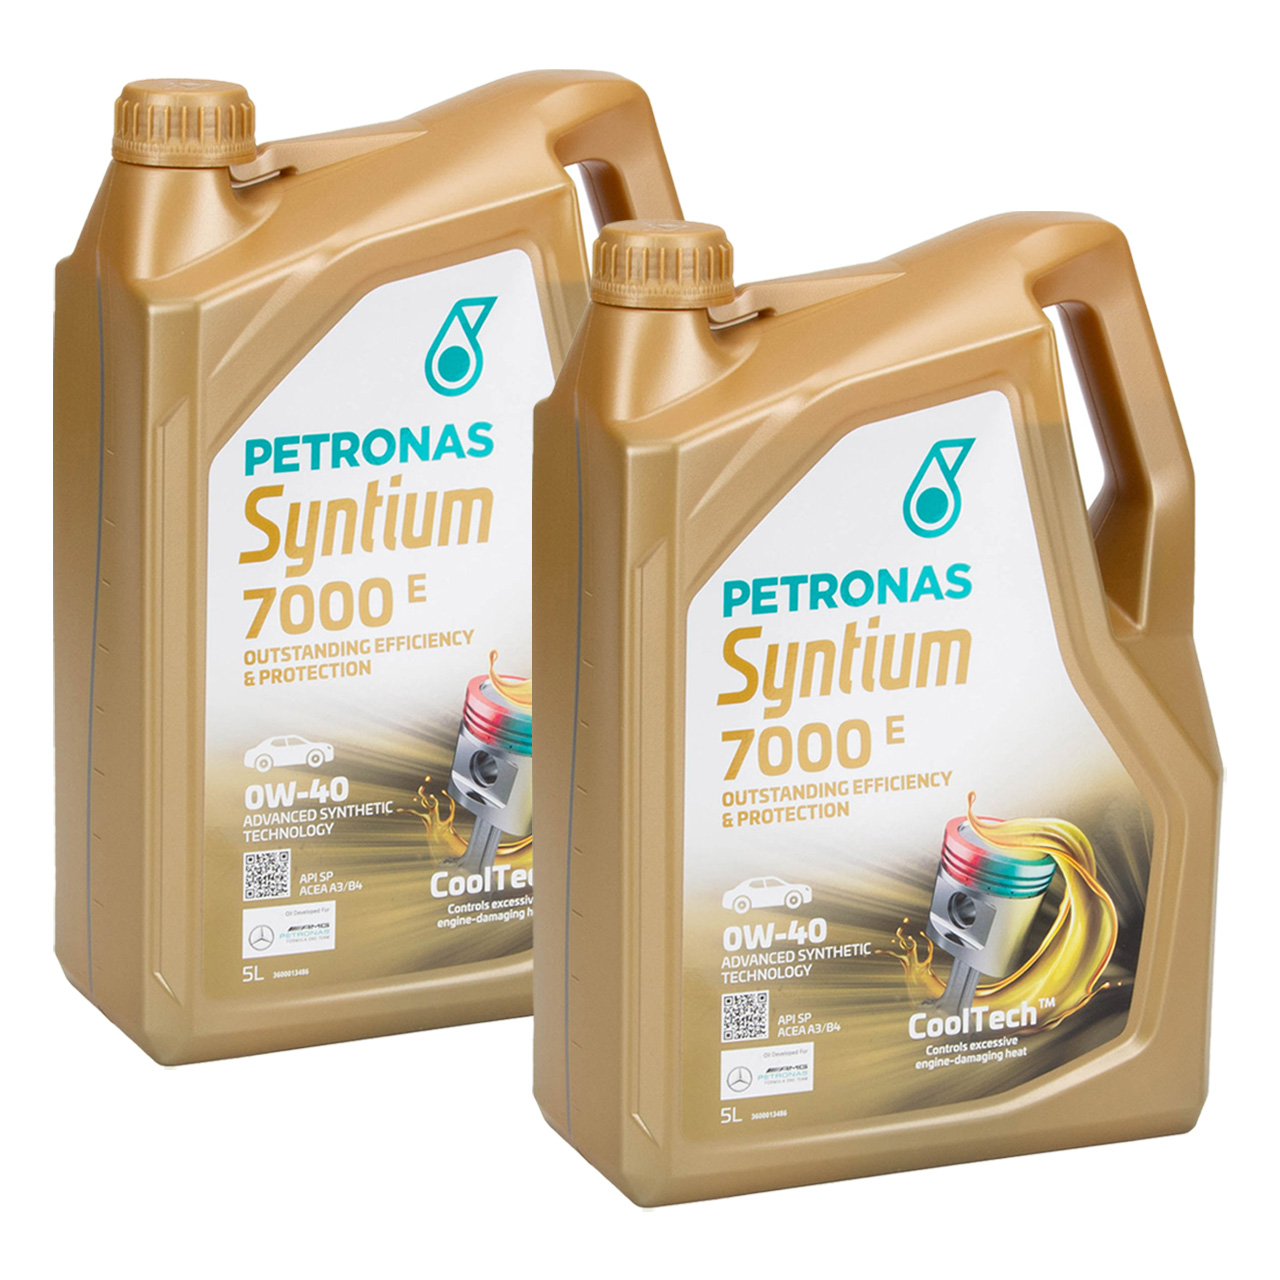 10L 10 Liter PETRONAS Syntium 7000 E 0W-40 Motoröl Öl BMW LL-01 MB 229.5 VW 502/505.00